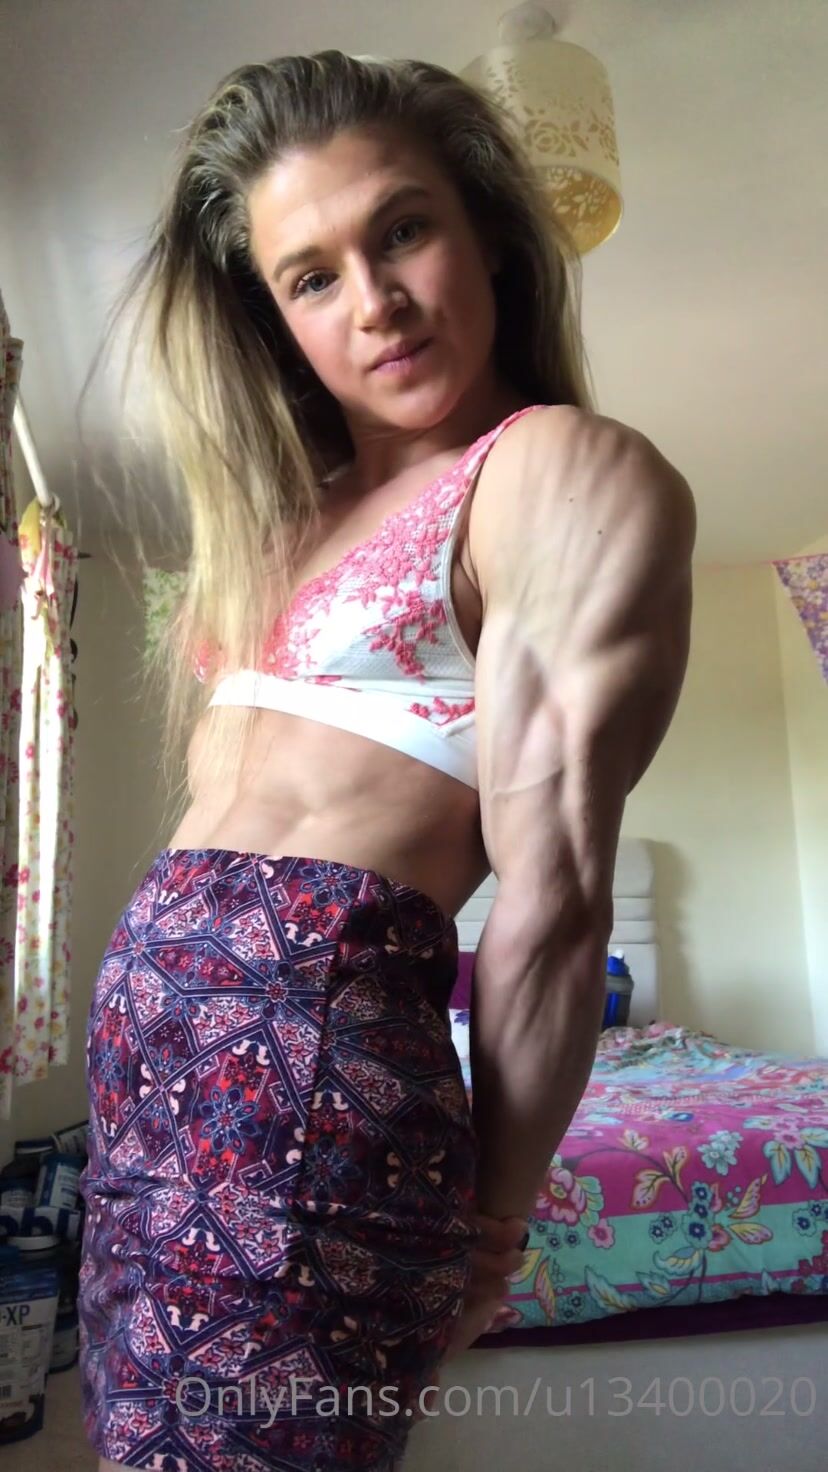 Emily Brand - shredded muscles